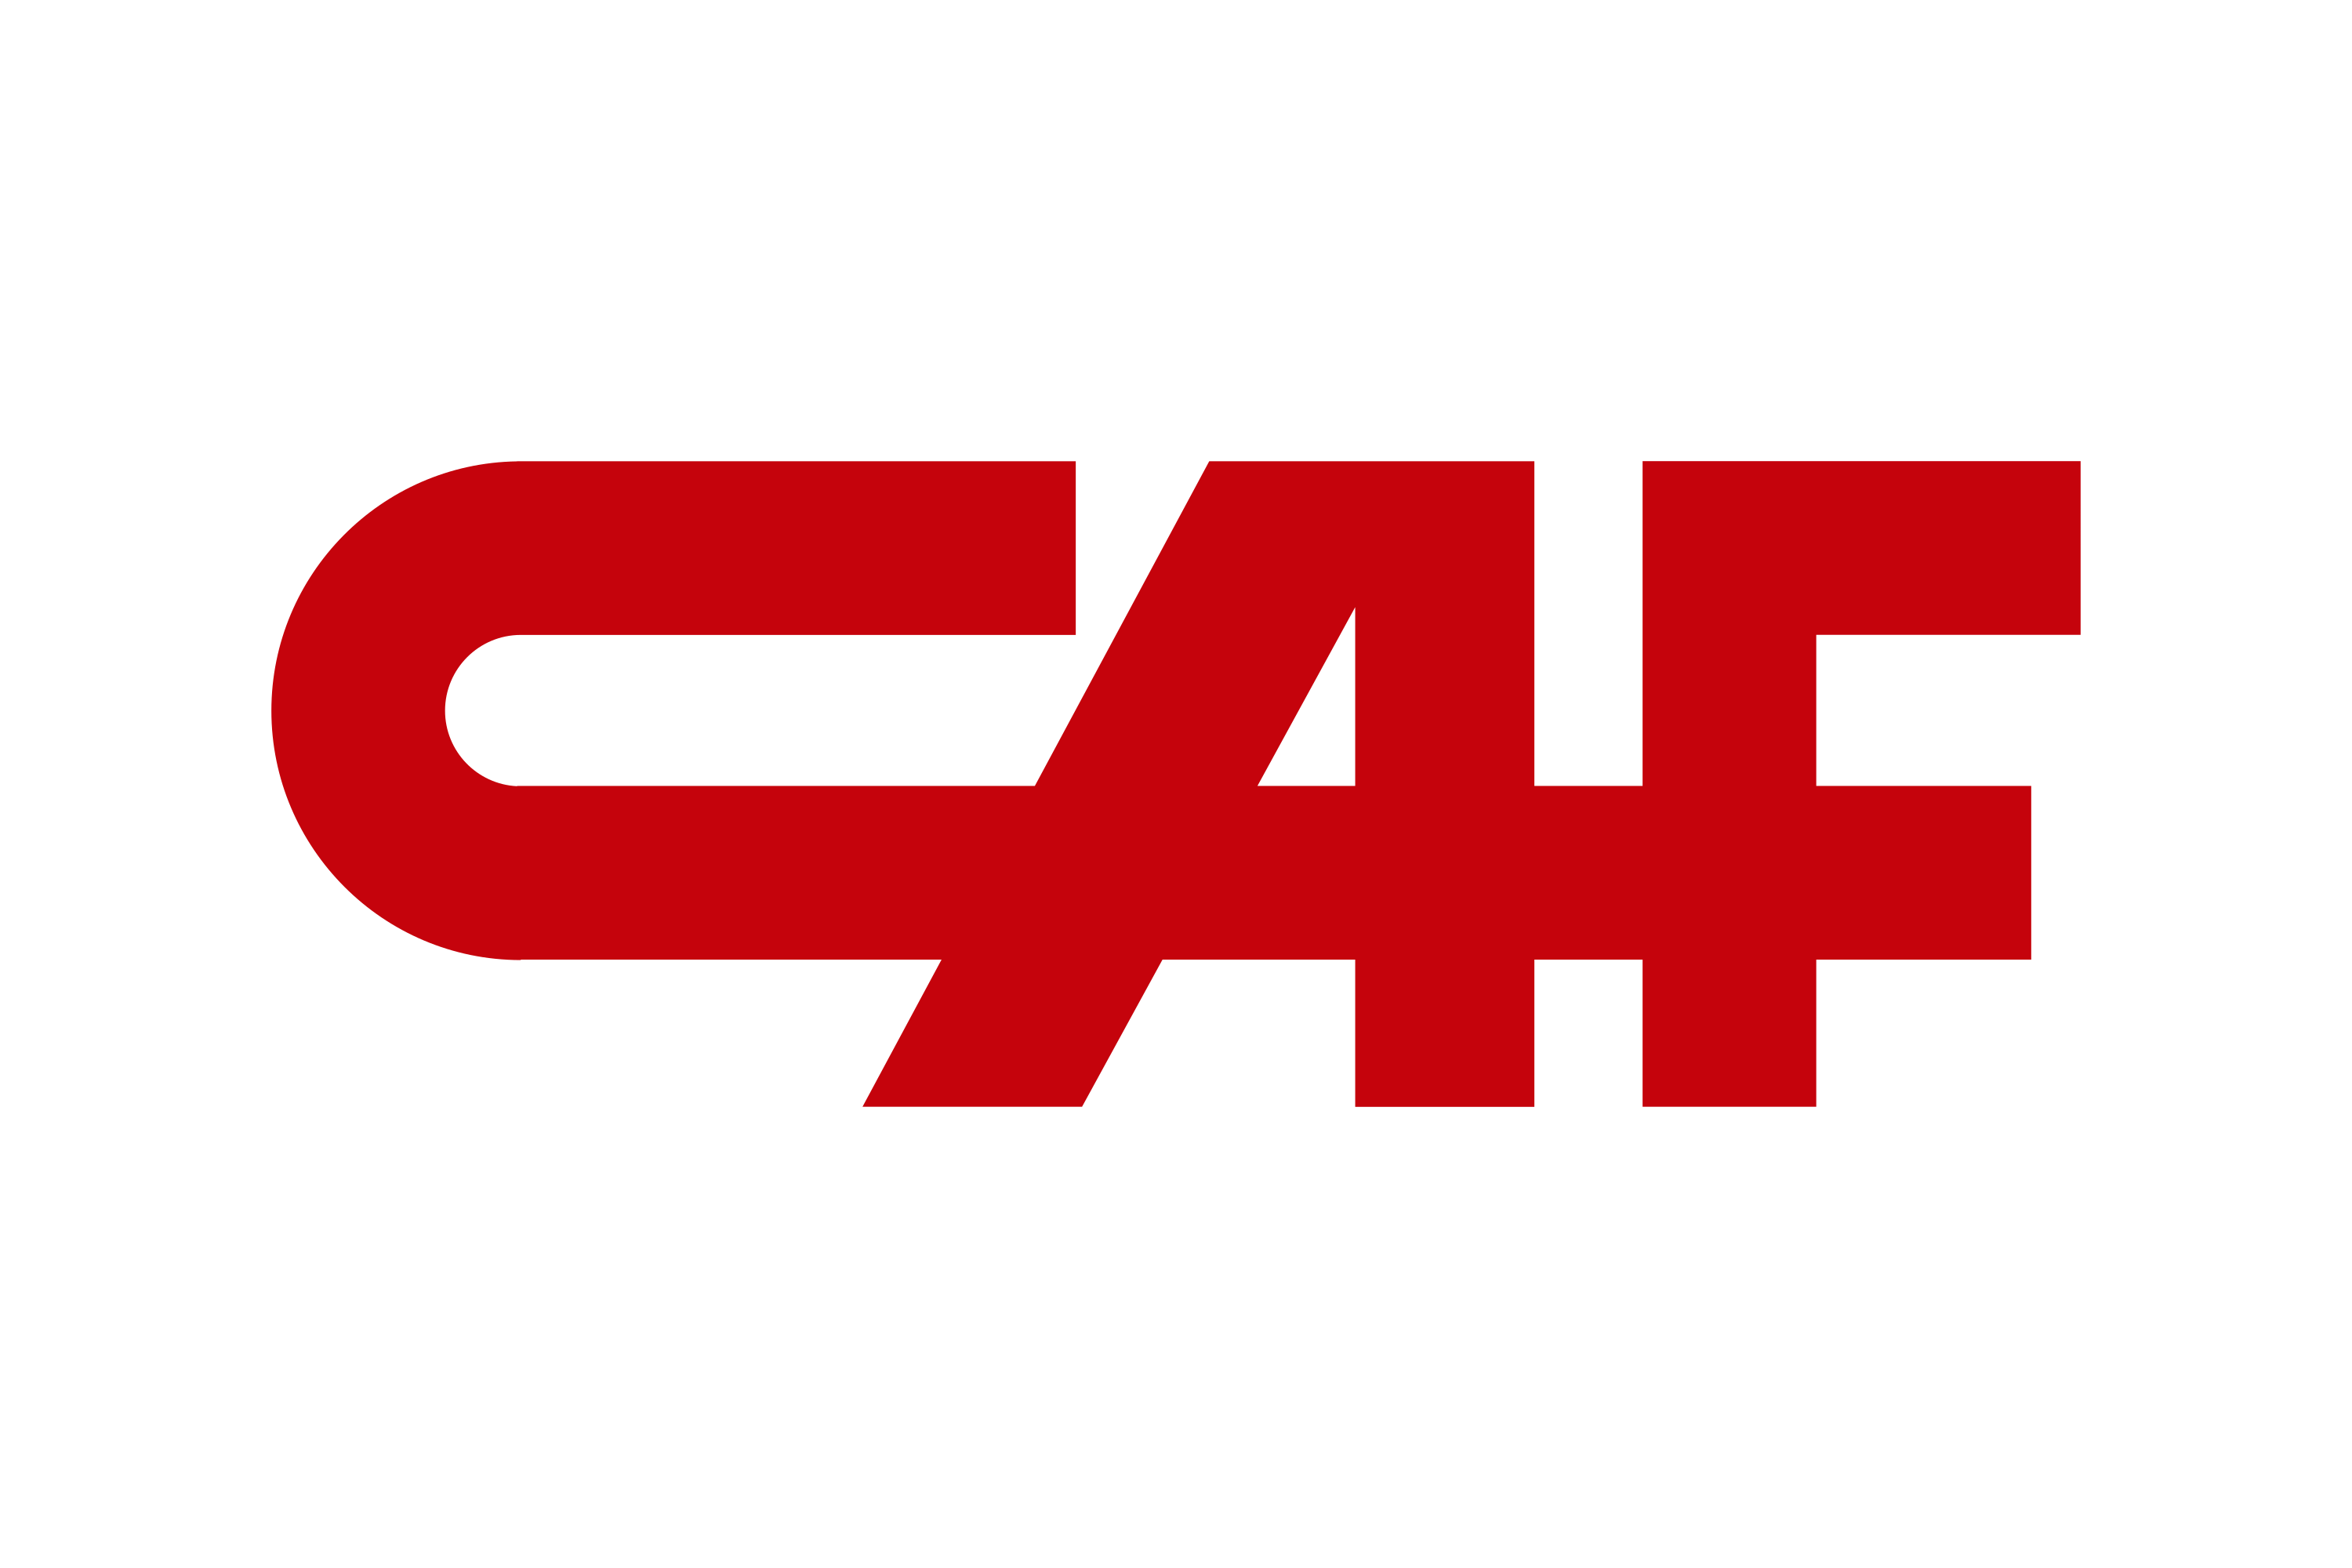 Download Construcciones y Auxiliar de Ferrocarriles (Grupo CAF) Logo in